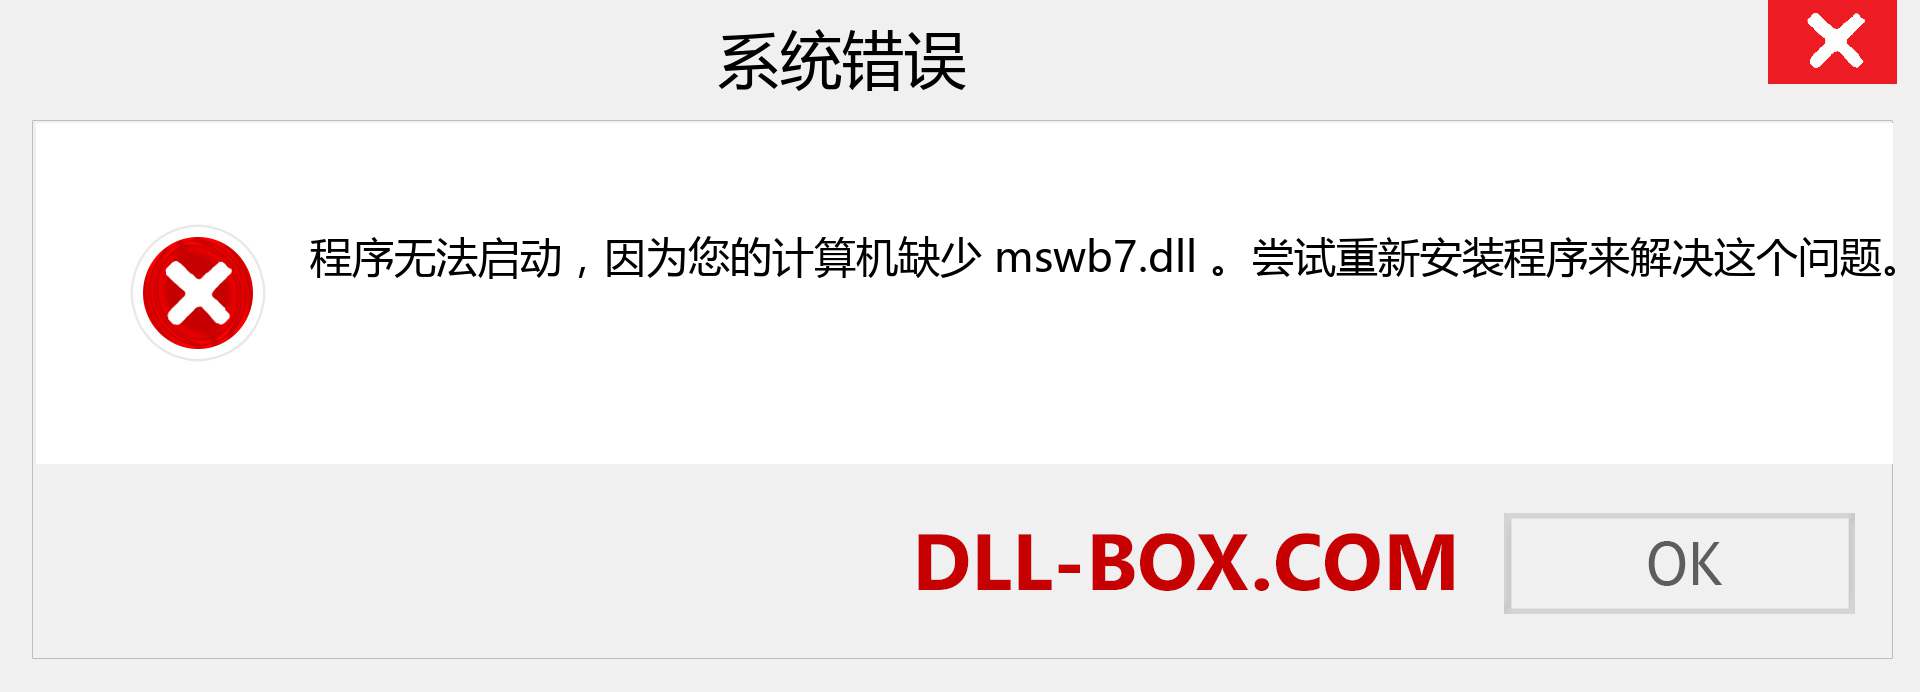 mswb7.dll 文件丢失？。 适用于 Windows 7、8、10 的下载 - 修复 Windows、照片、图像上的 mswb7 dll 丢失错误